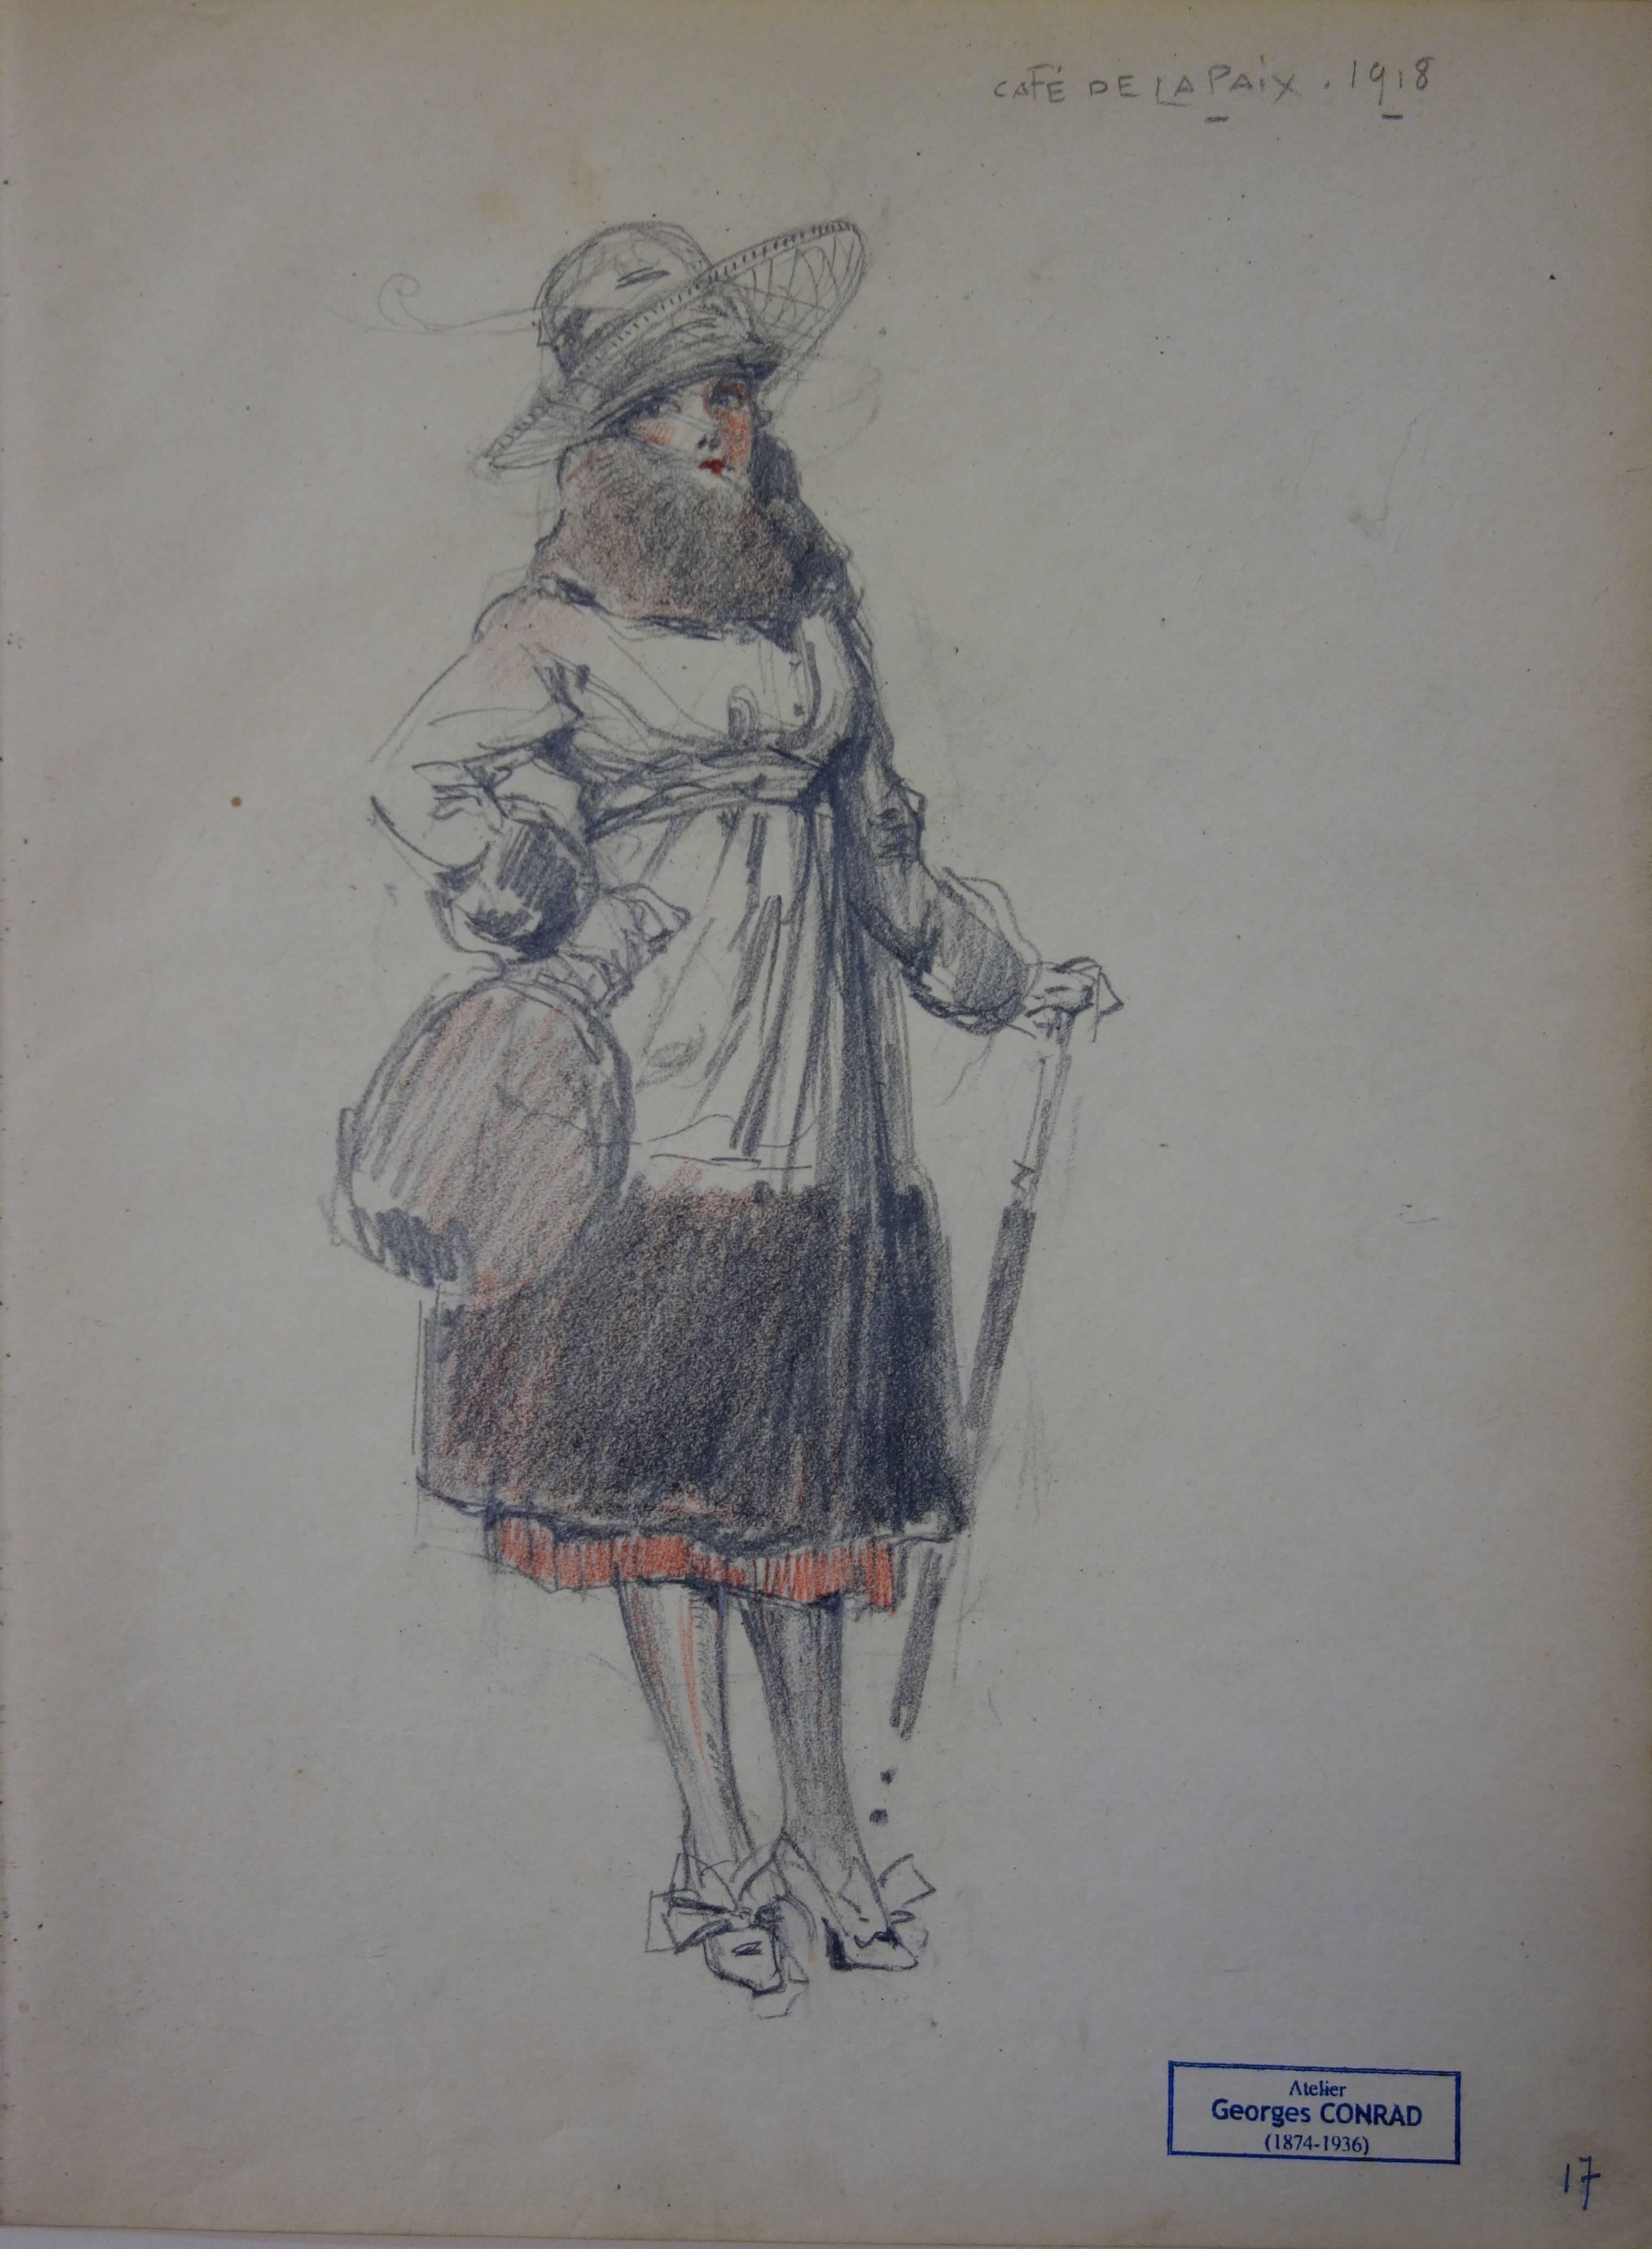 Une femme élégante vue au café de la Paix (Paris) - dessin au crayon, vers 1914